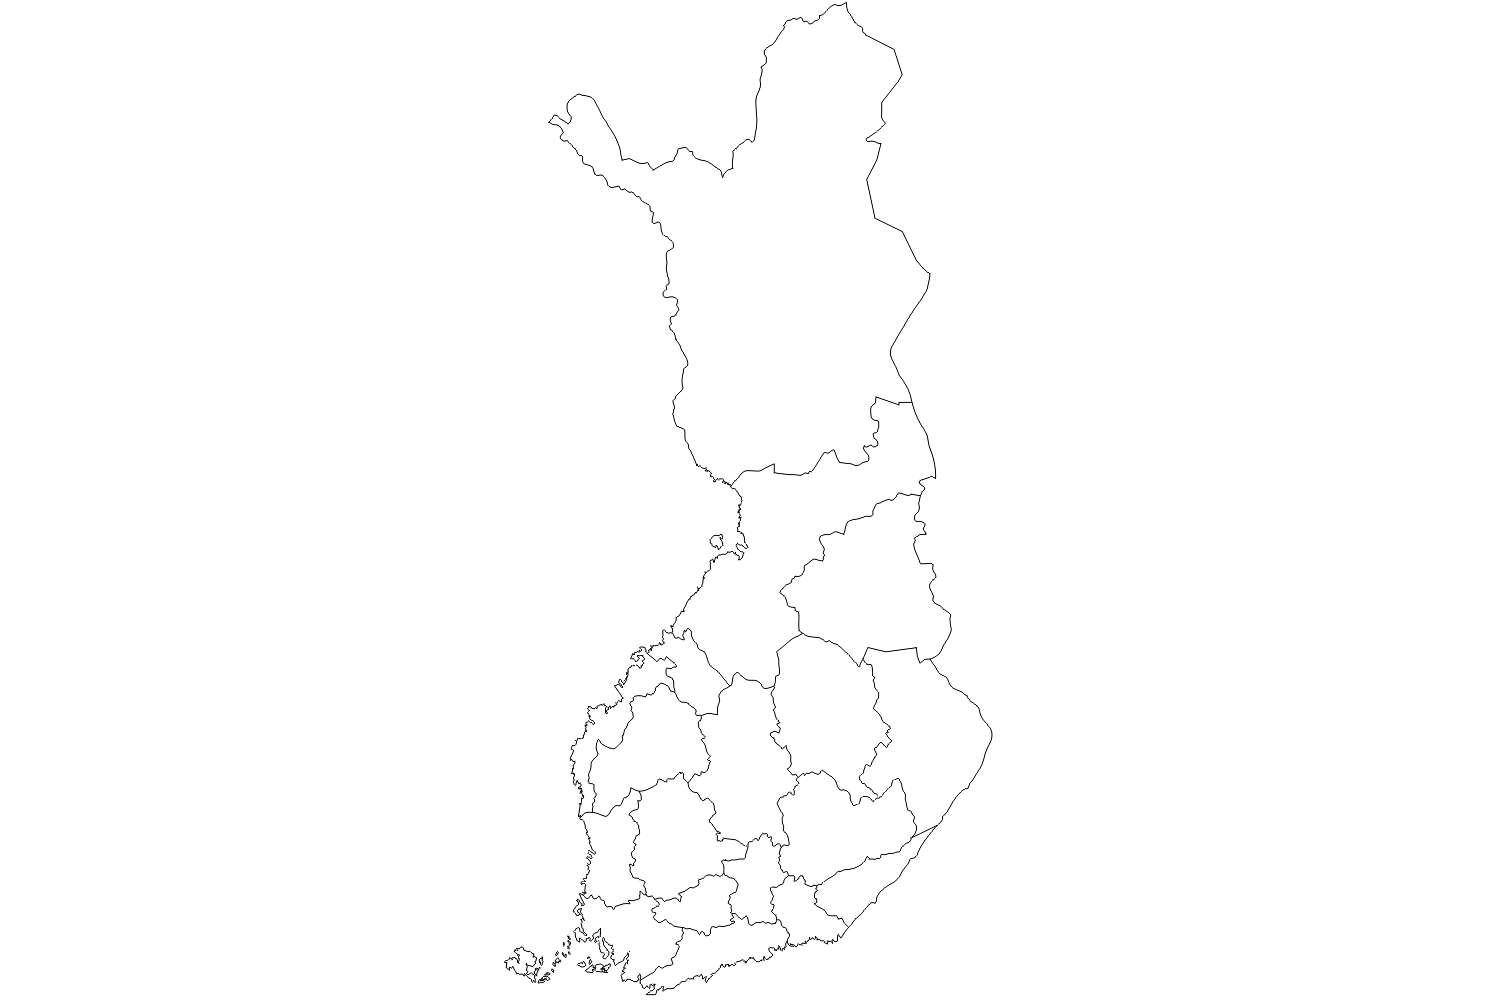 Finland - wide 1